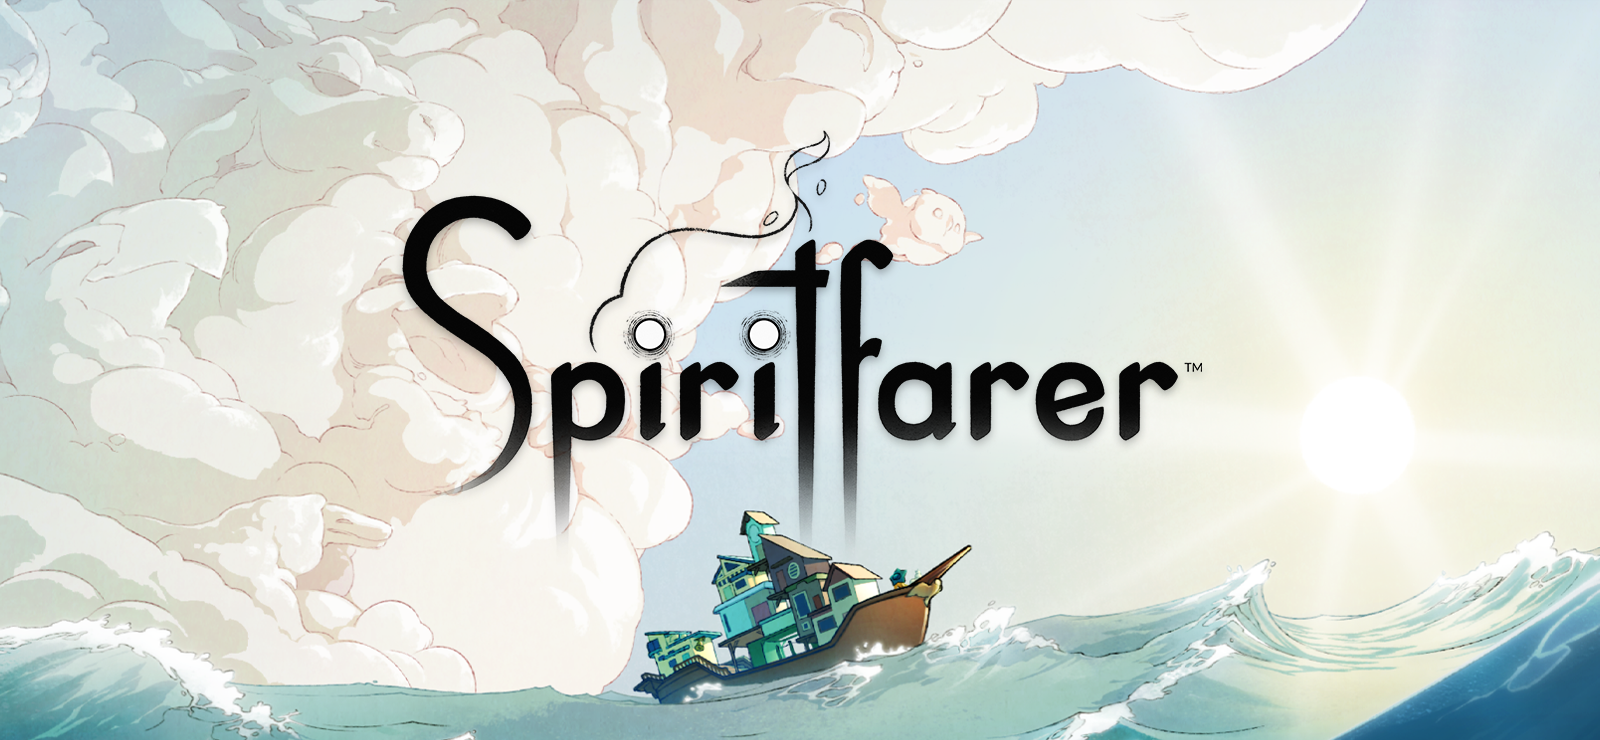 Spiritfarer Demo on GOG.com